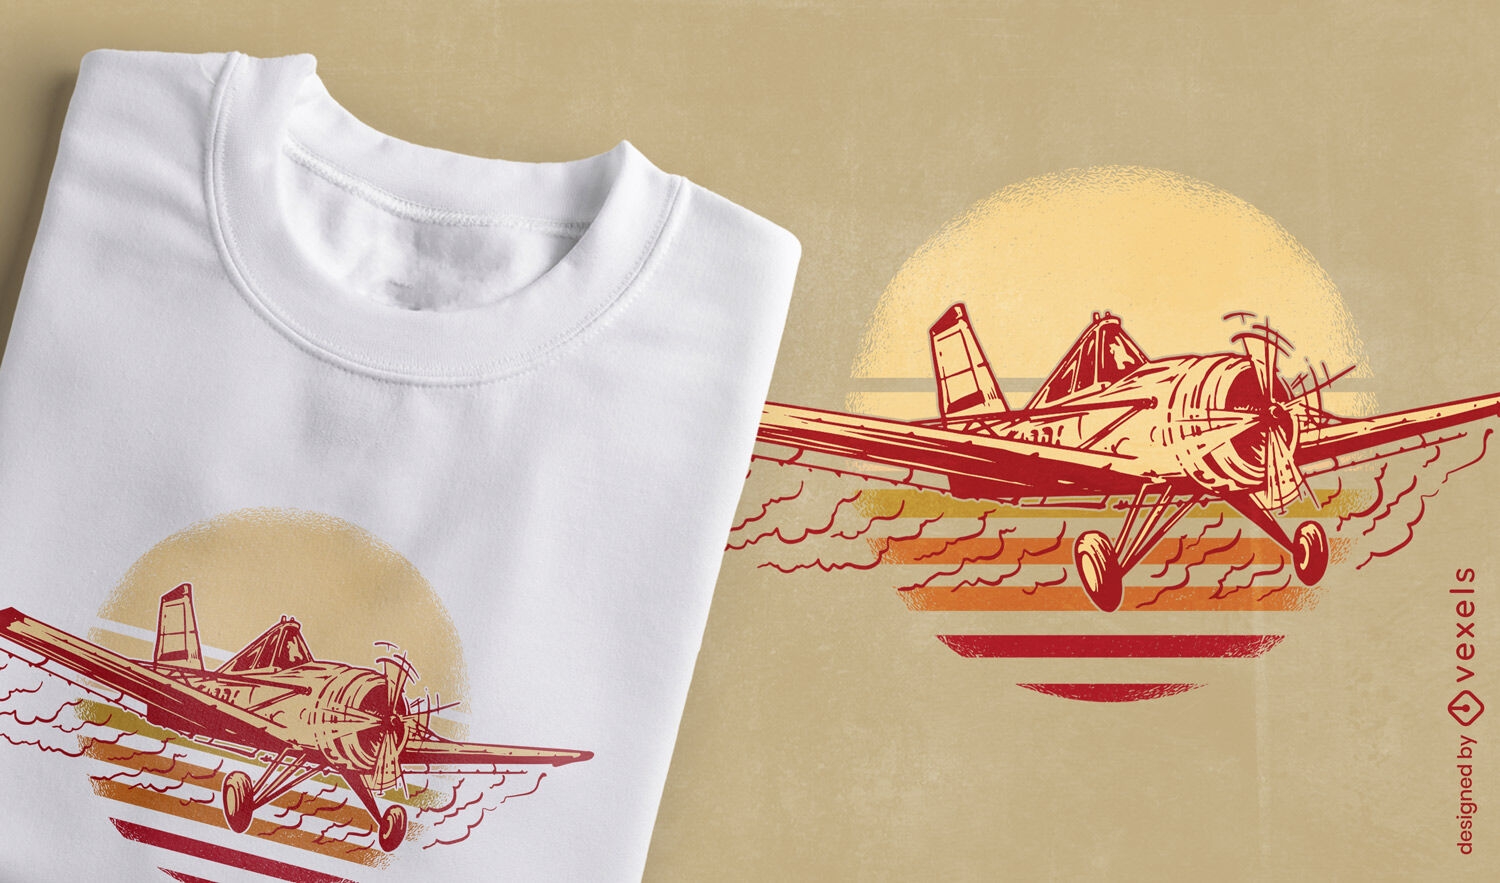 Diseño de camiseta de avioneta y puesta de sol retro.